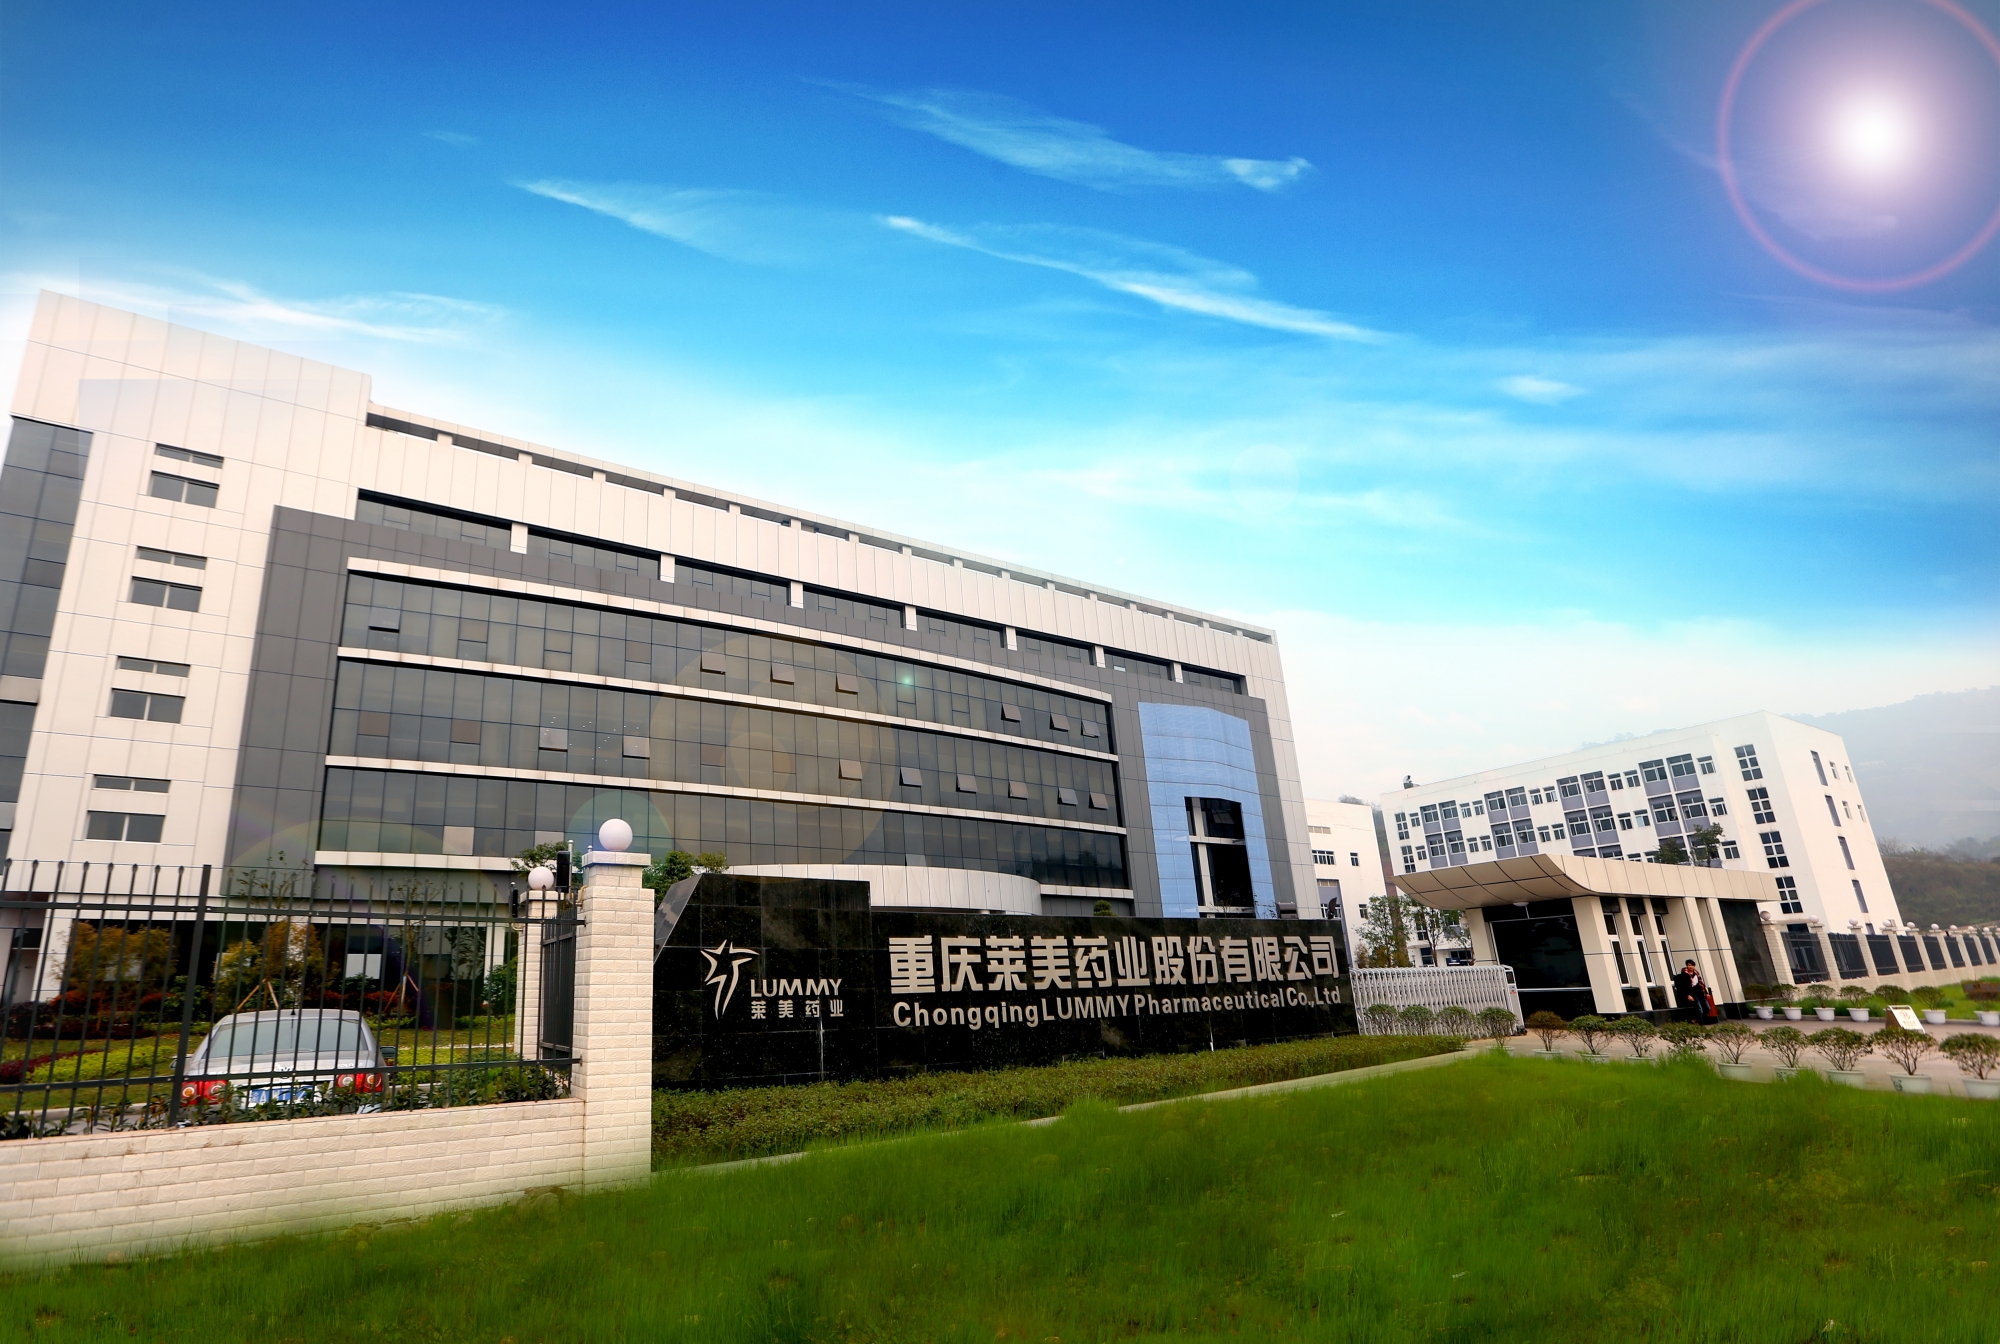 重庆莱美药业股份有限公司 环境照片活动图片